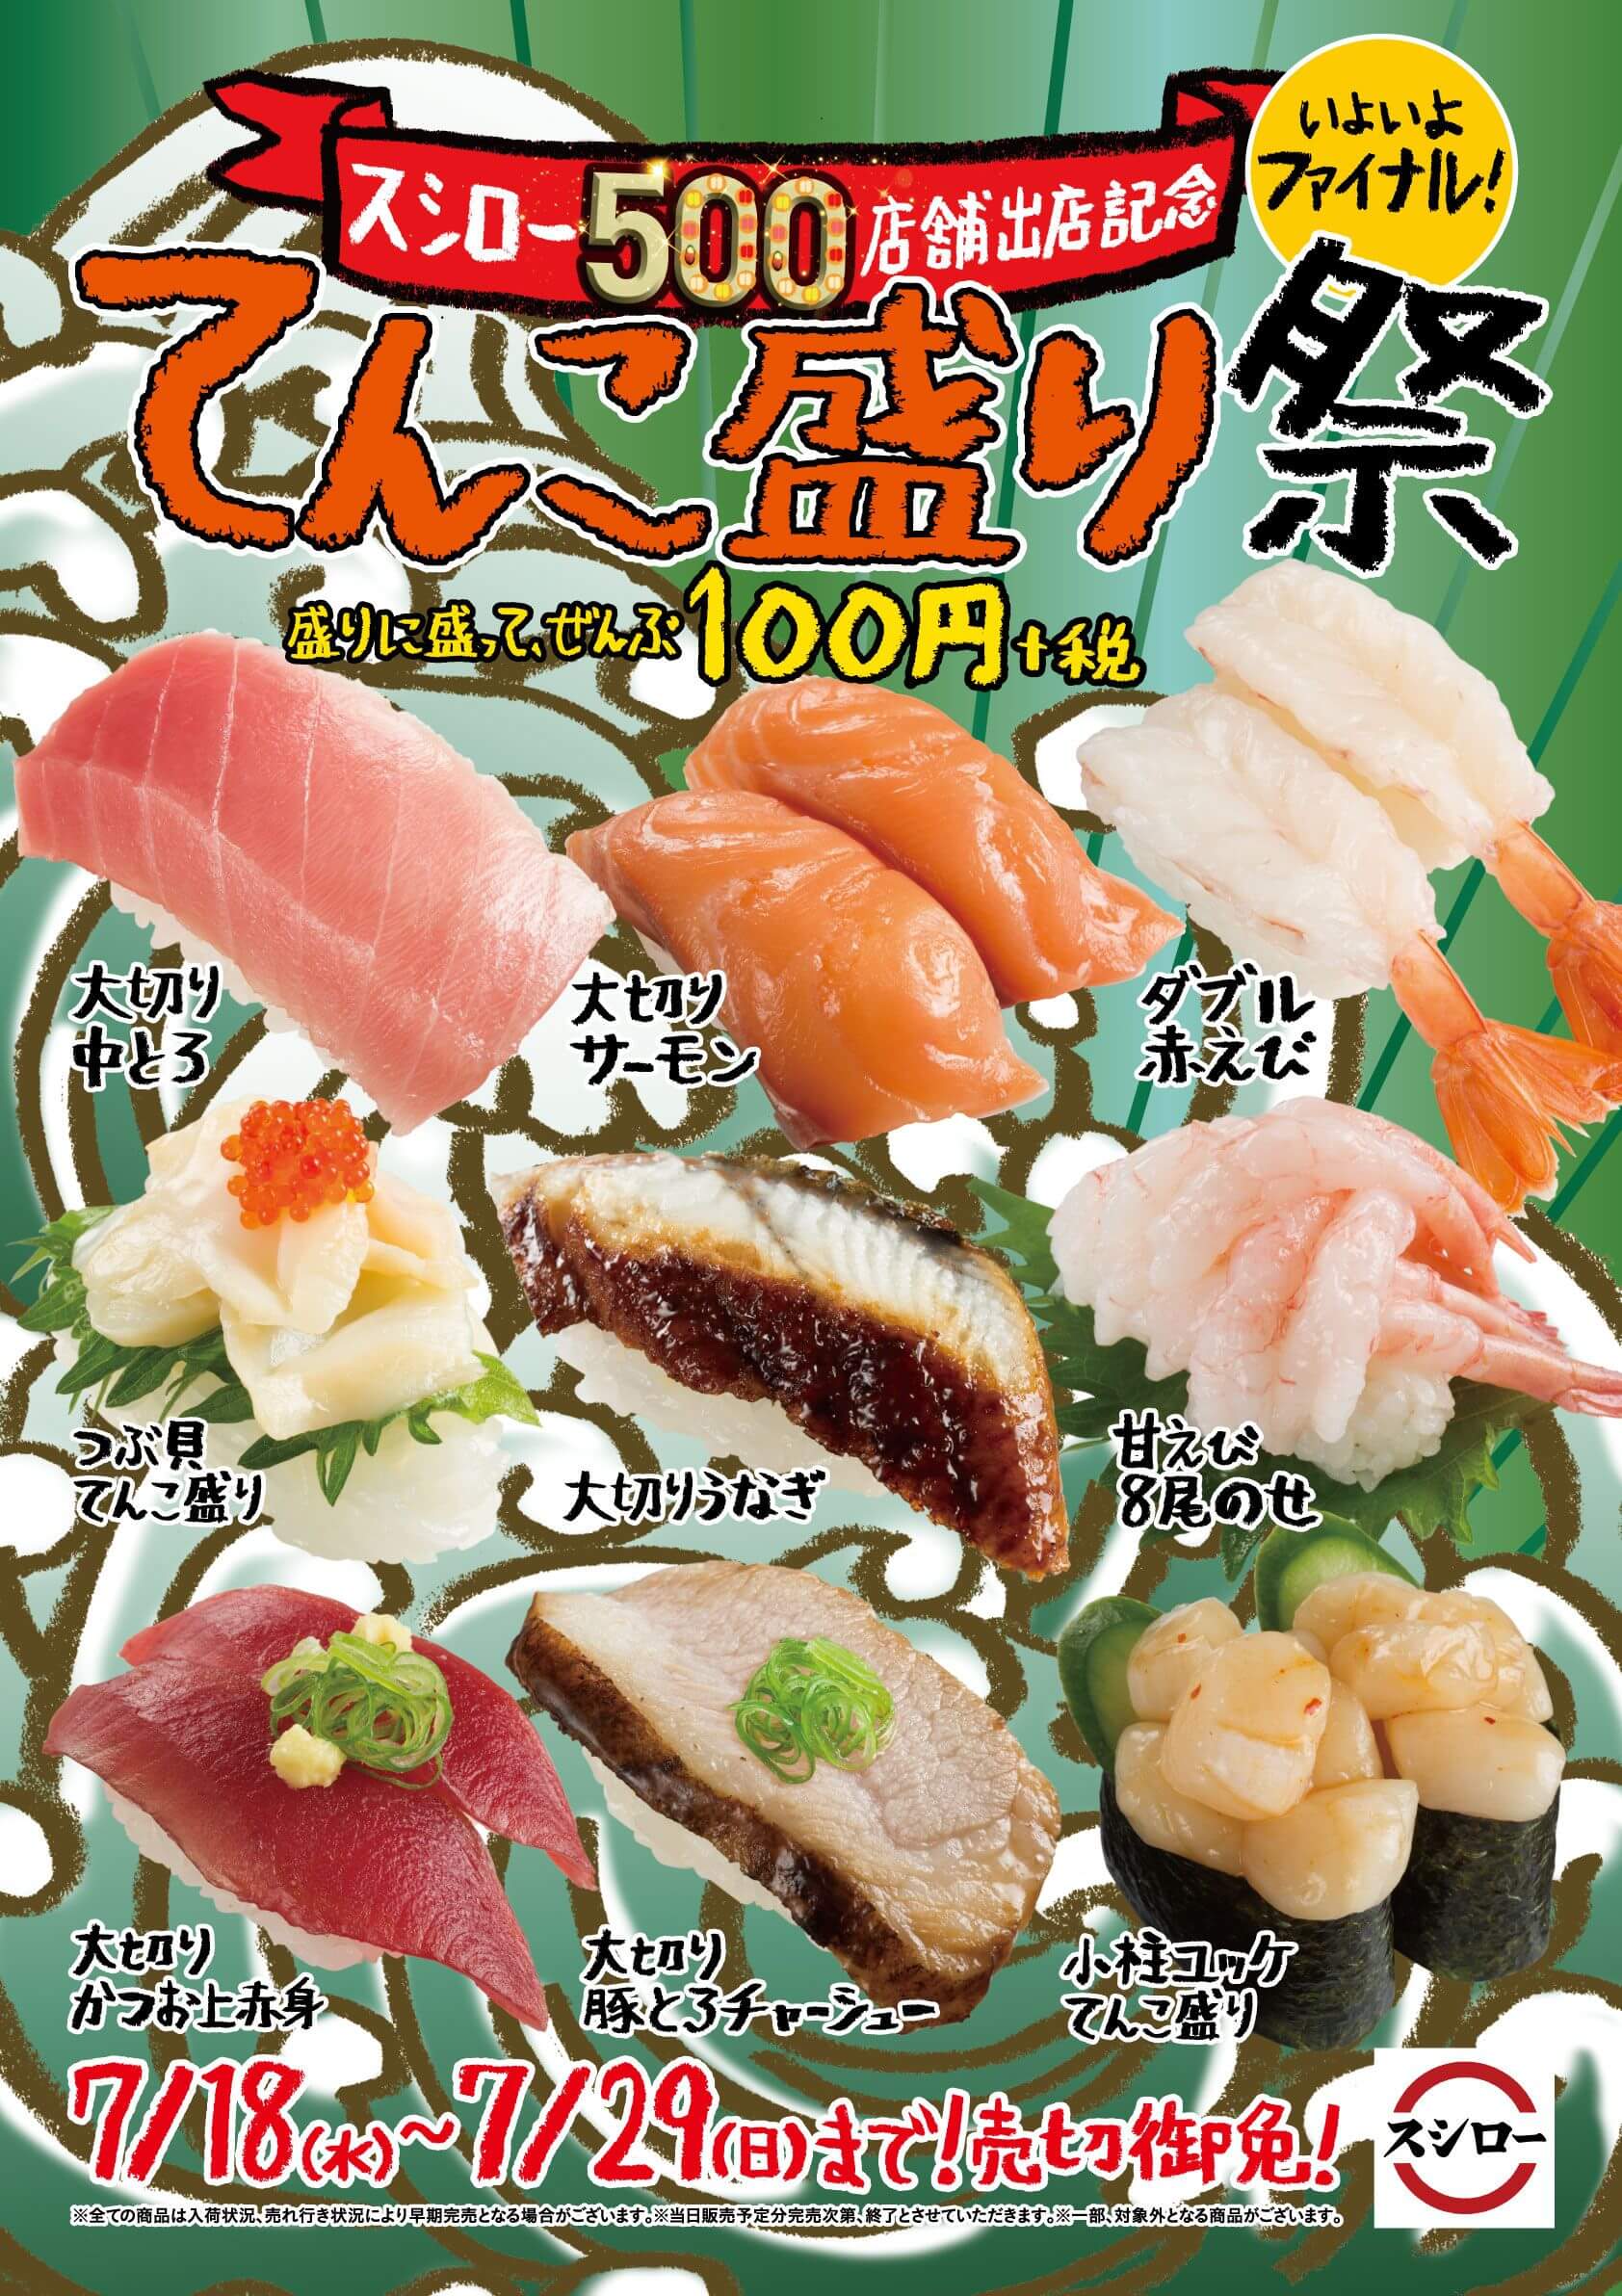 回転すしチェーン スシロー 100円から楽しめる てんこ盛り祭 開催 Moshi Moshi Nippon もしもしにっぽん